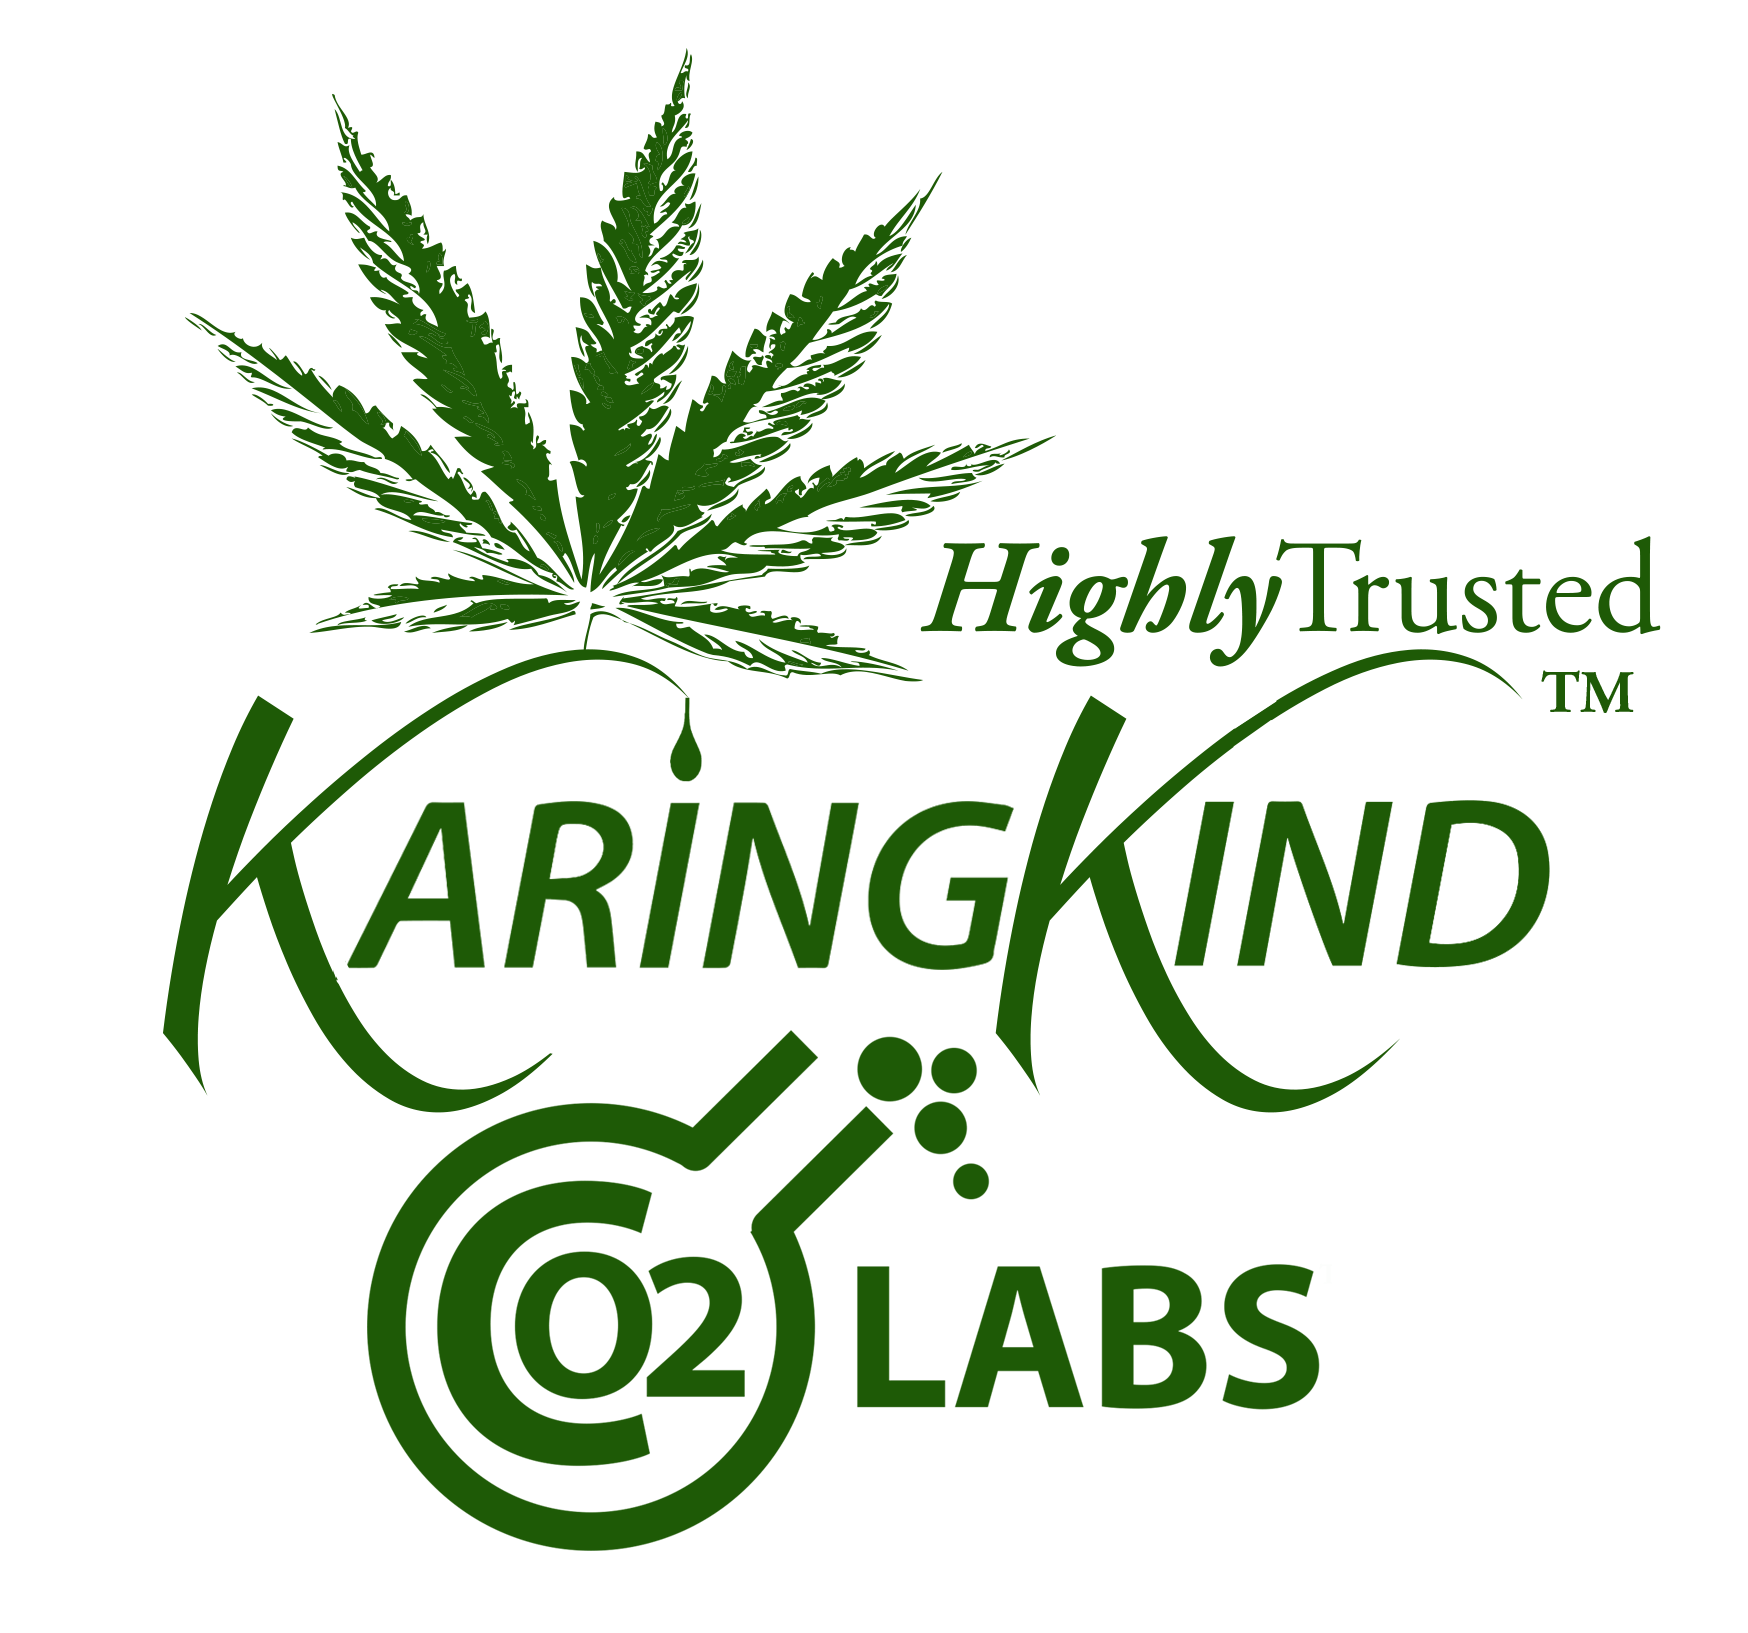 Karing Kind - Adult Use - Medical Marijuana Doctors - Cannabizme.com